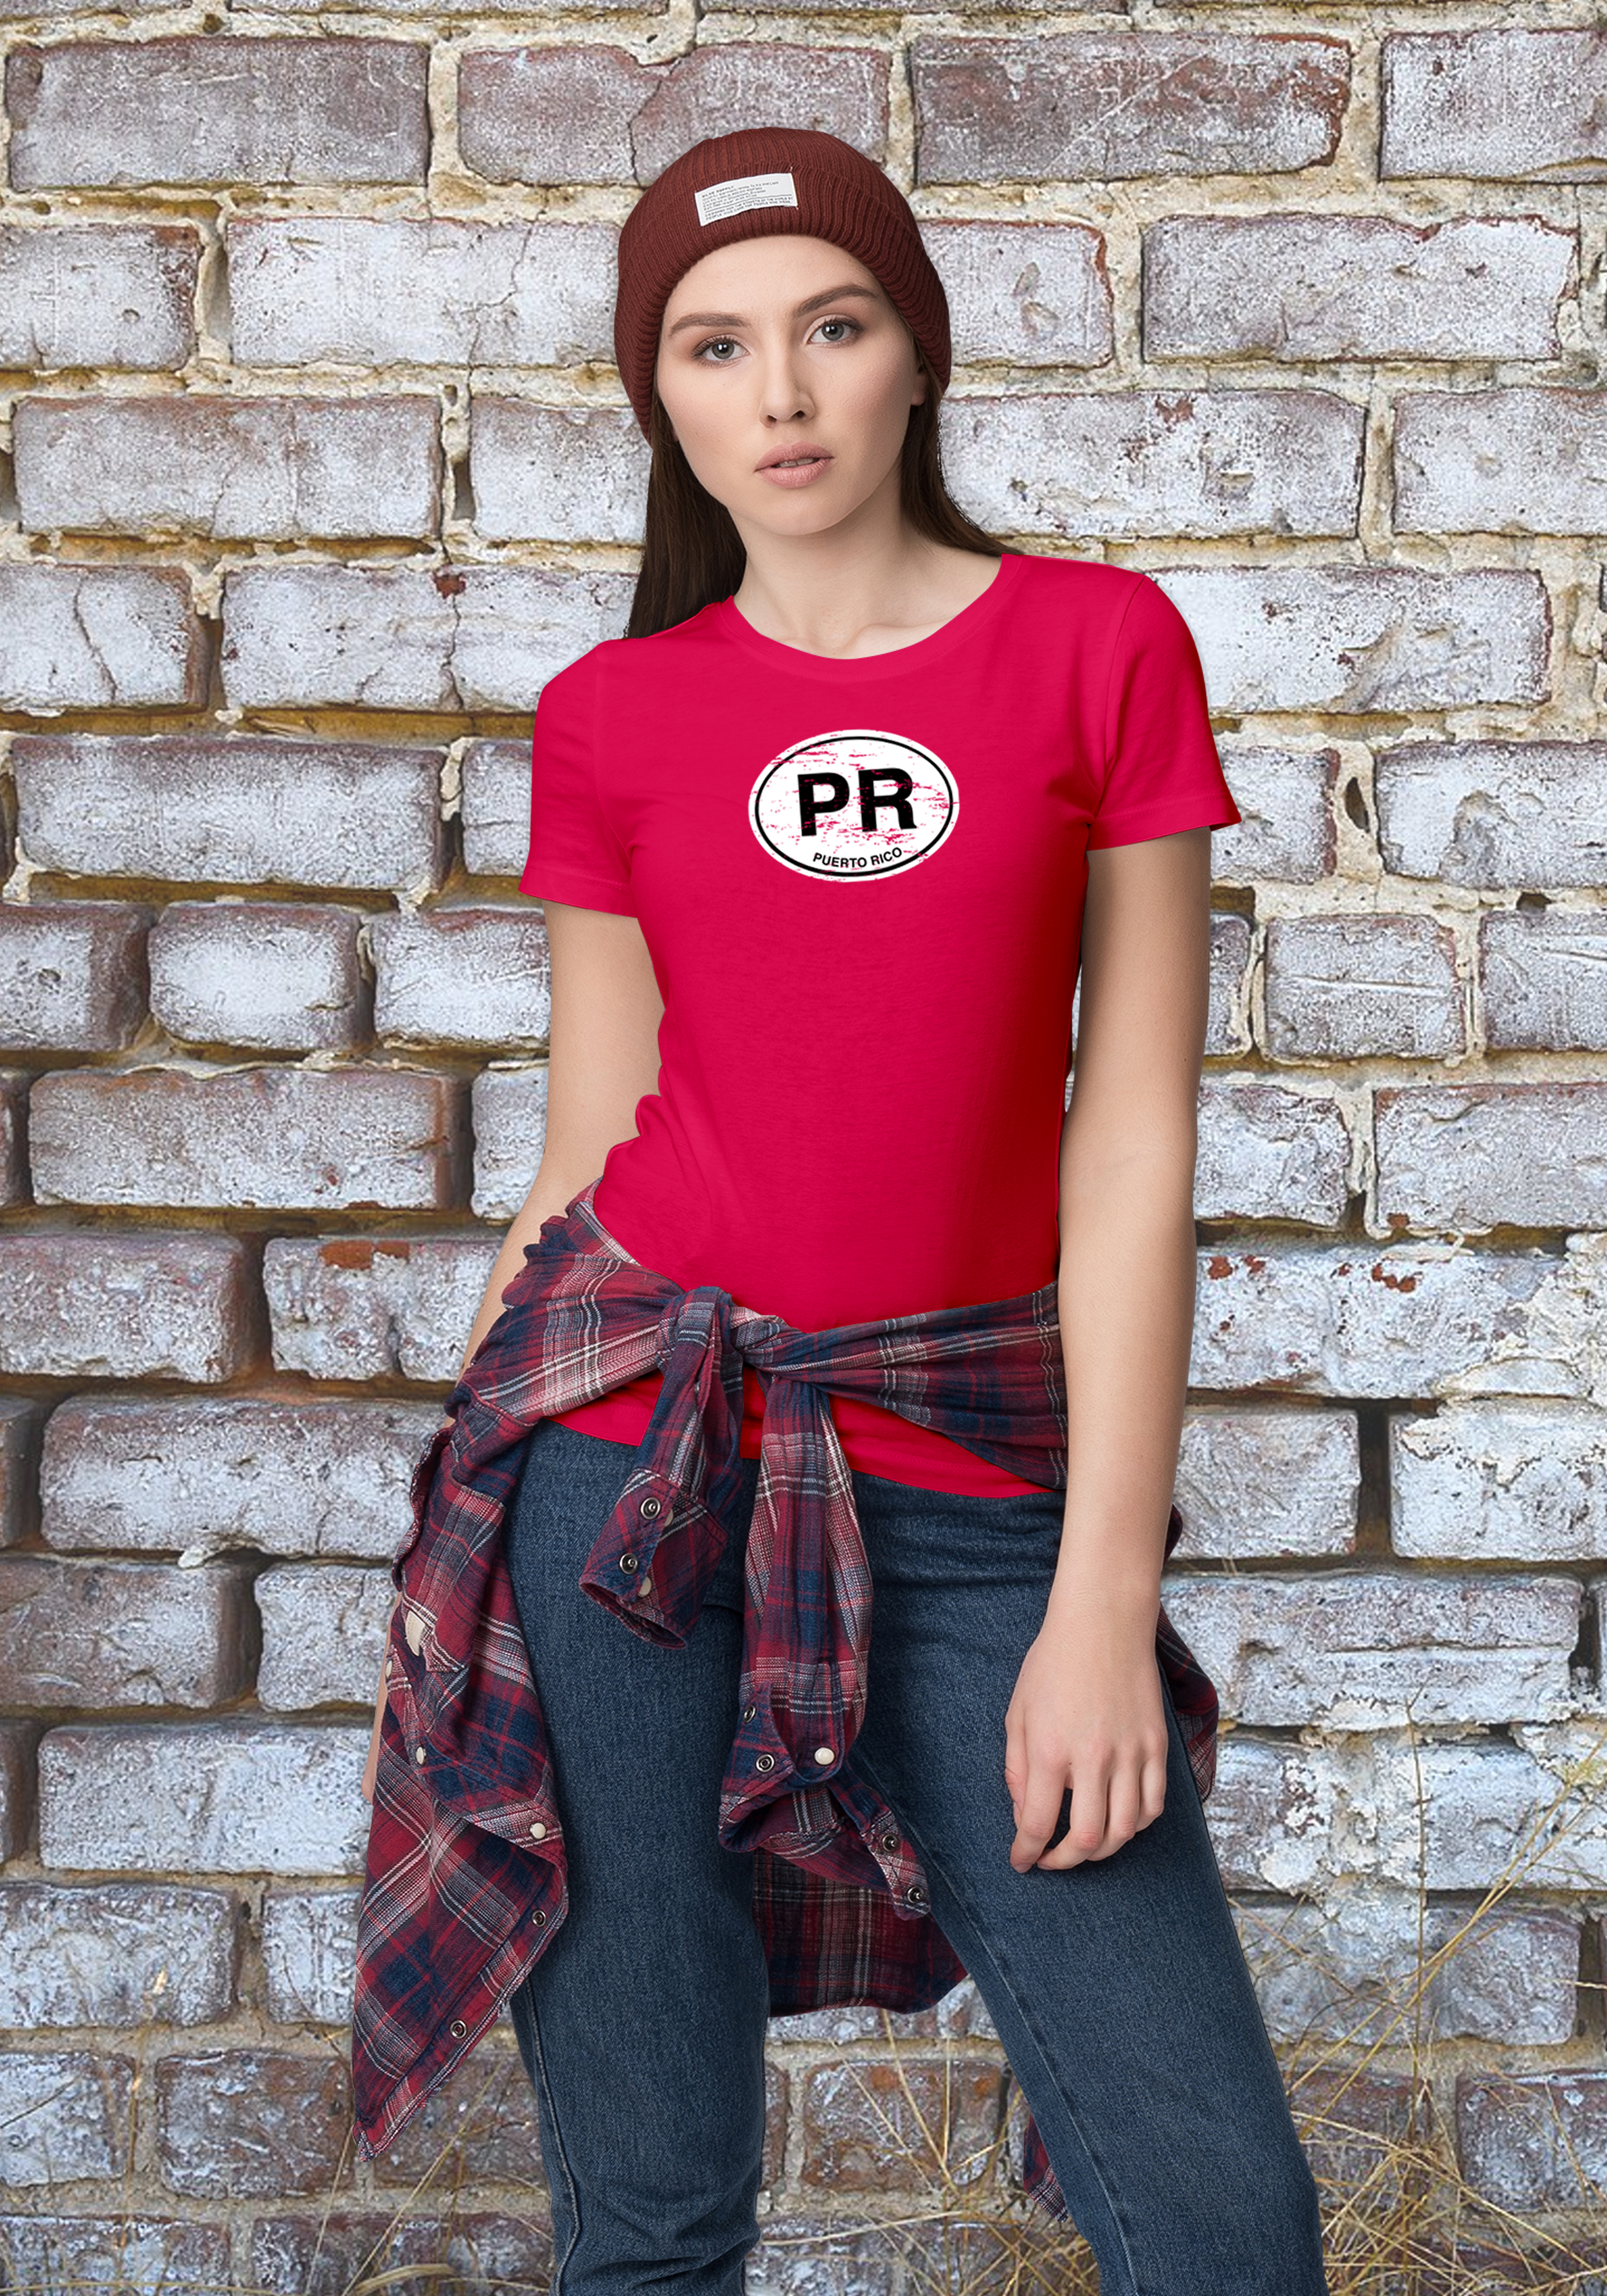 Puerto Rico Women's Classic T-Shirt Souvenirs - My Destination Location